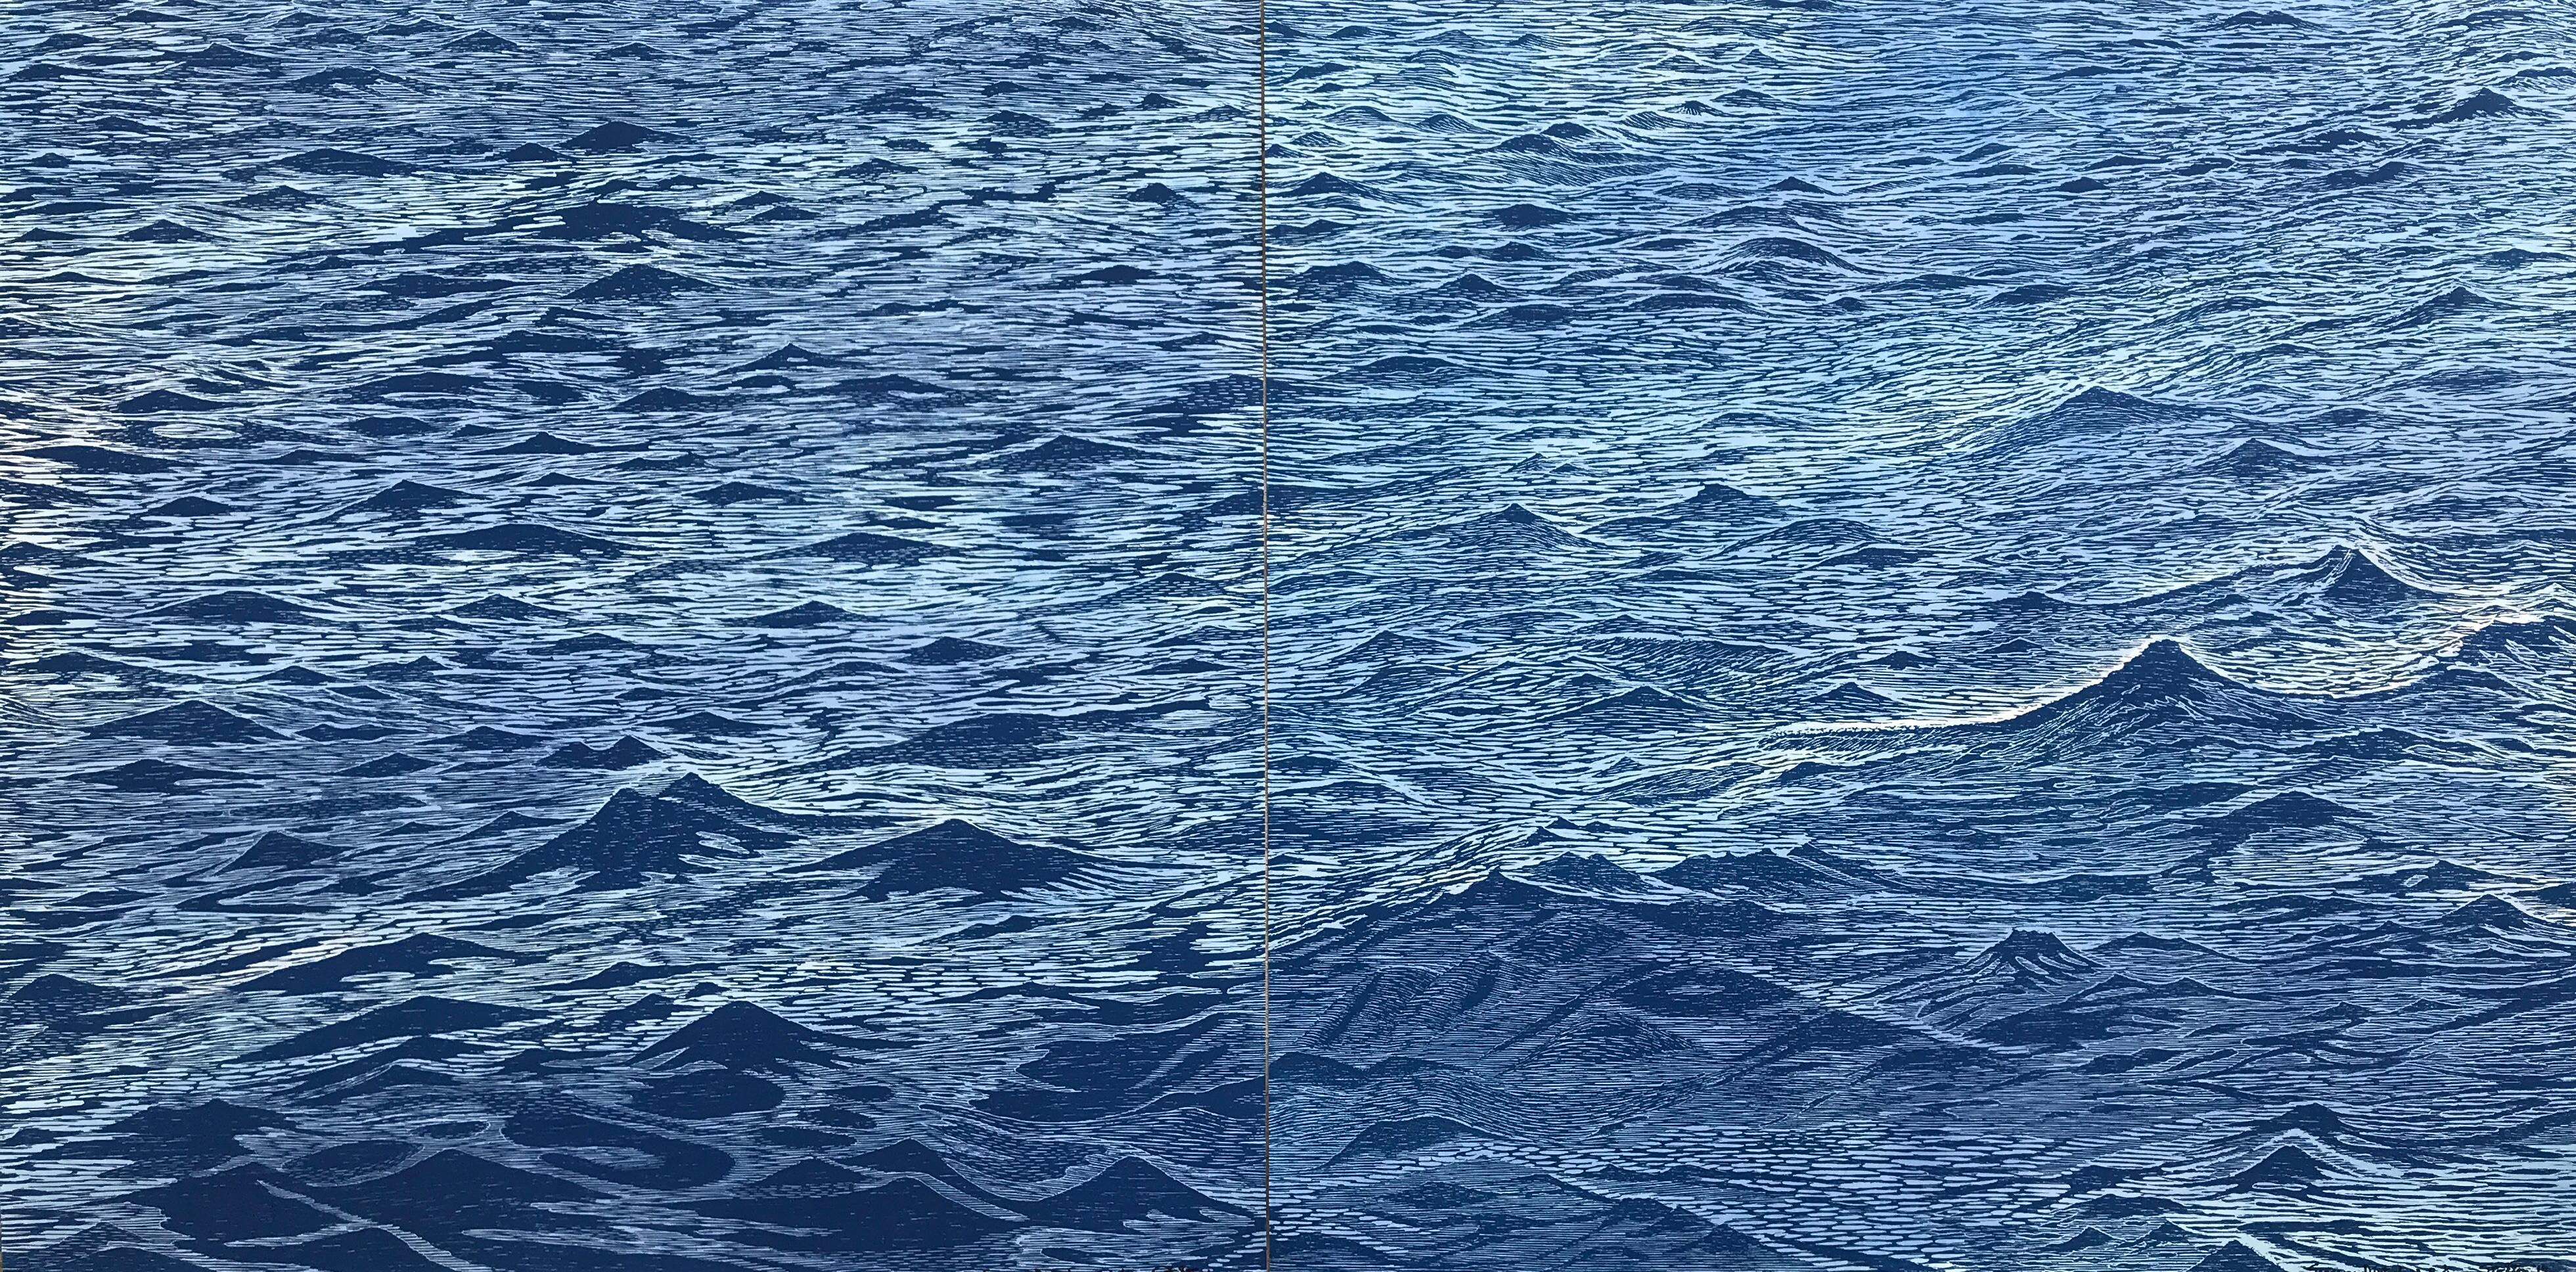 Landscape Print Eve Stockton - Diptyque de paysage marin 23, grande gravure horizontale sur bois bleue représentant de l'eau et des vagues océaniques